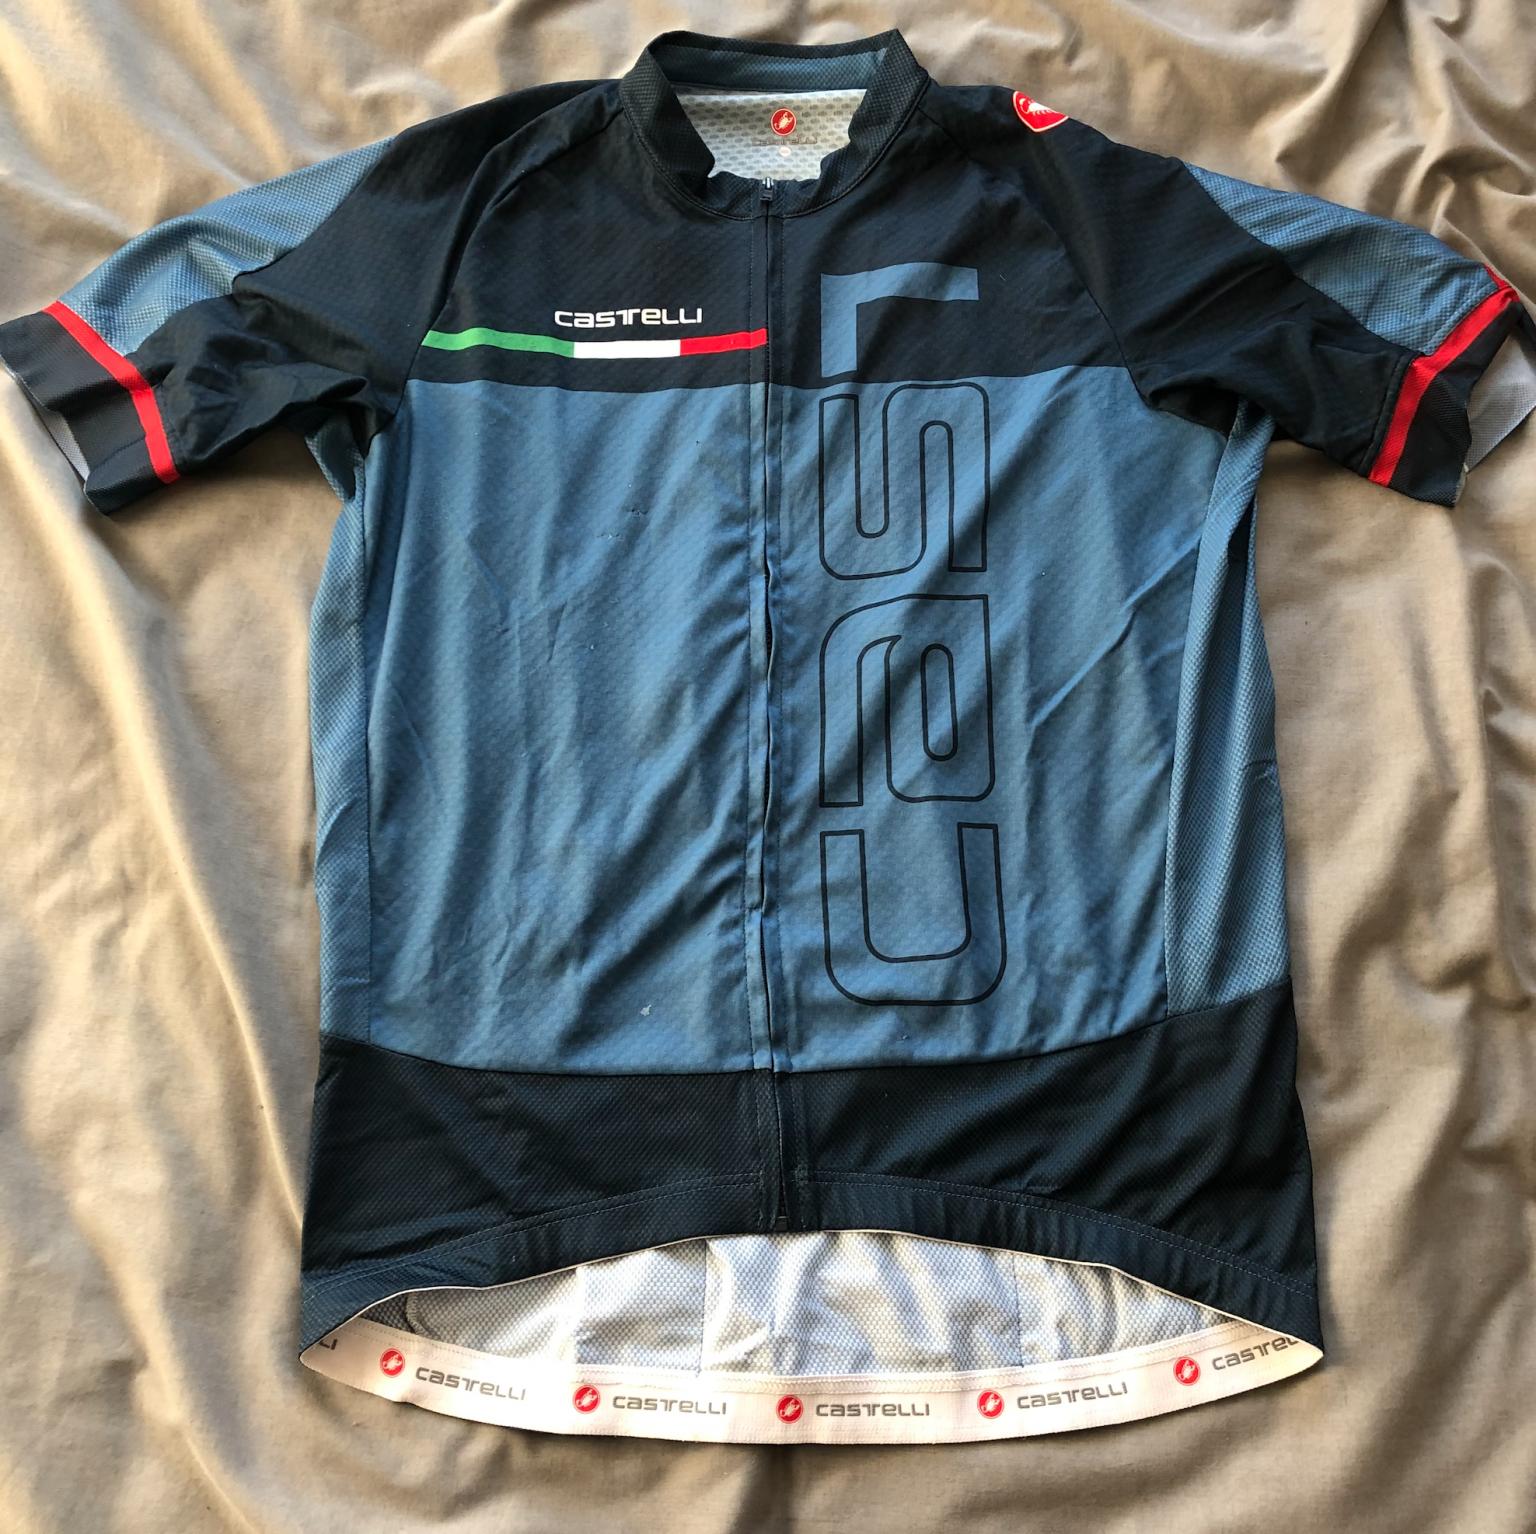 xxxl cycling jersey